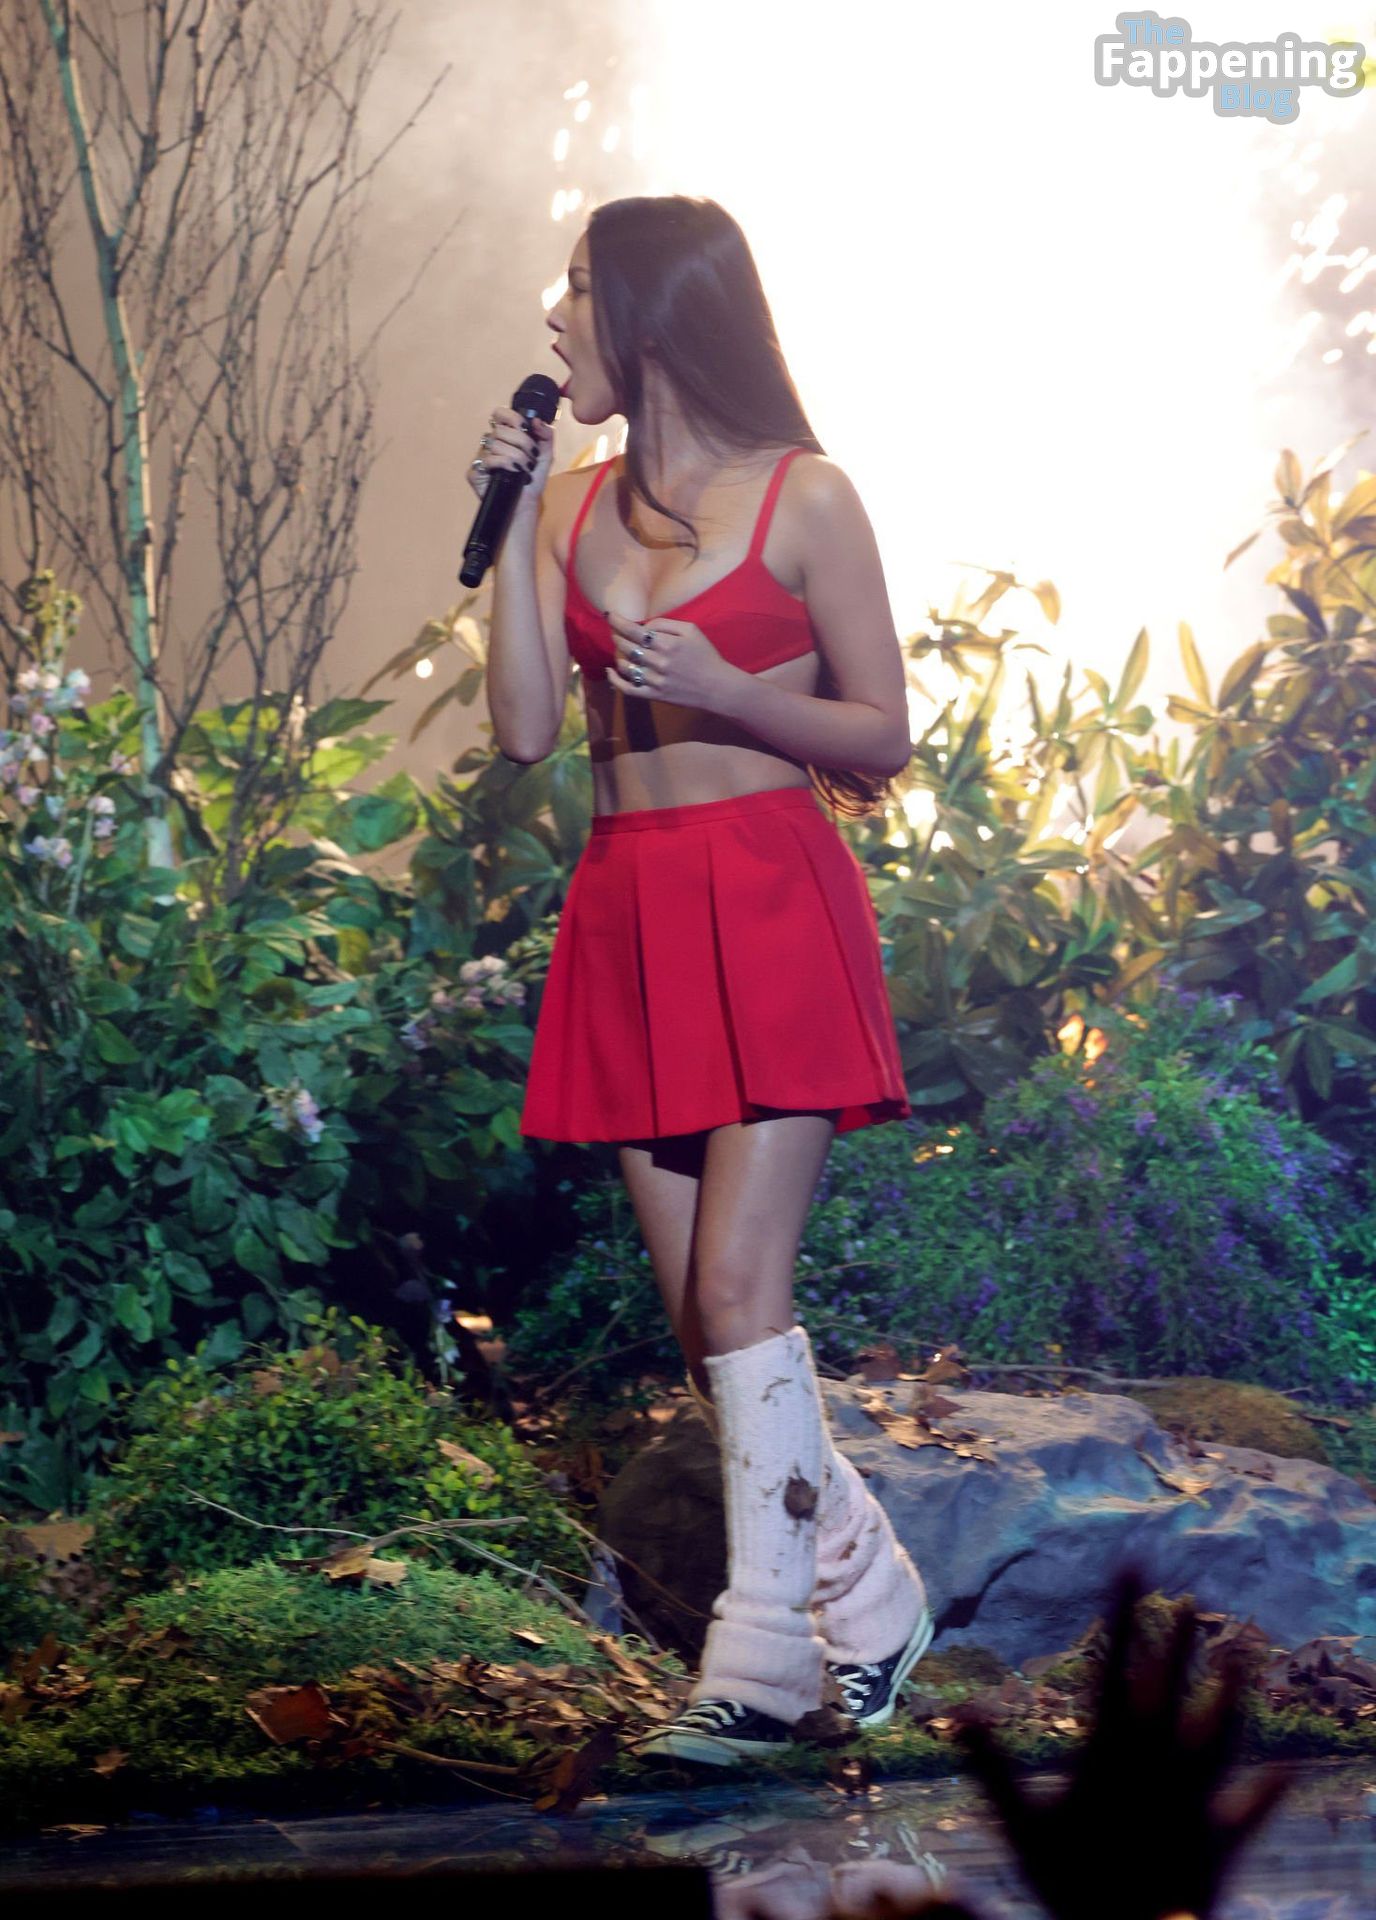 Olivia Rodrigo Shows Off Her Slender Figure at the 2023 MTV VMAs (102 Photos)